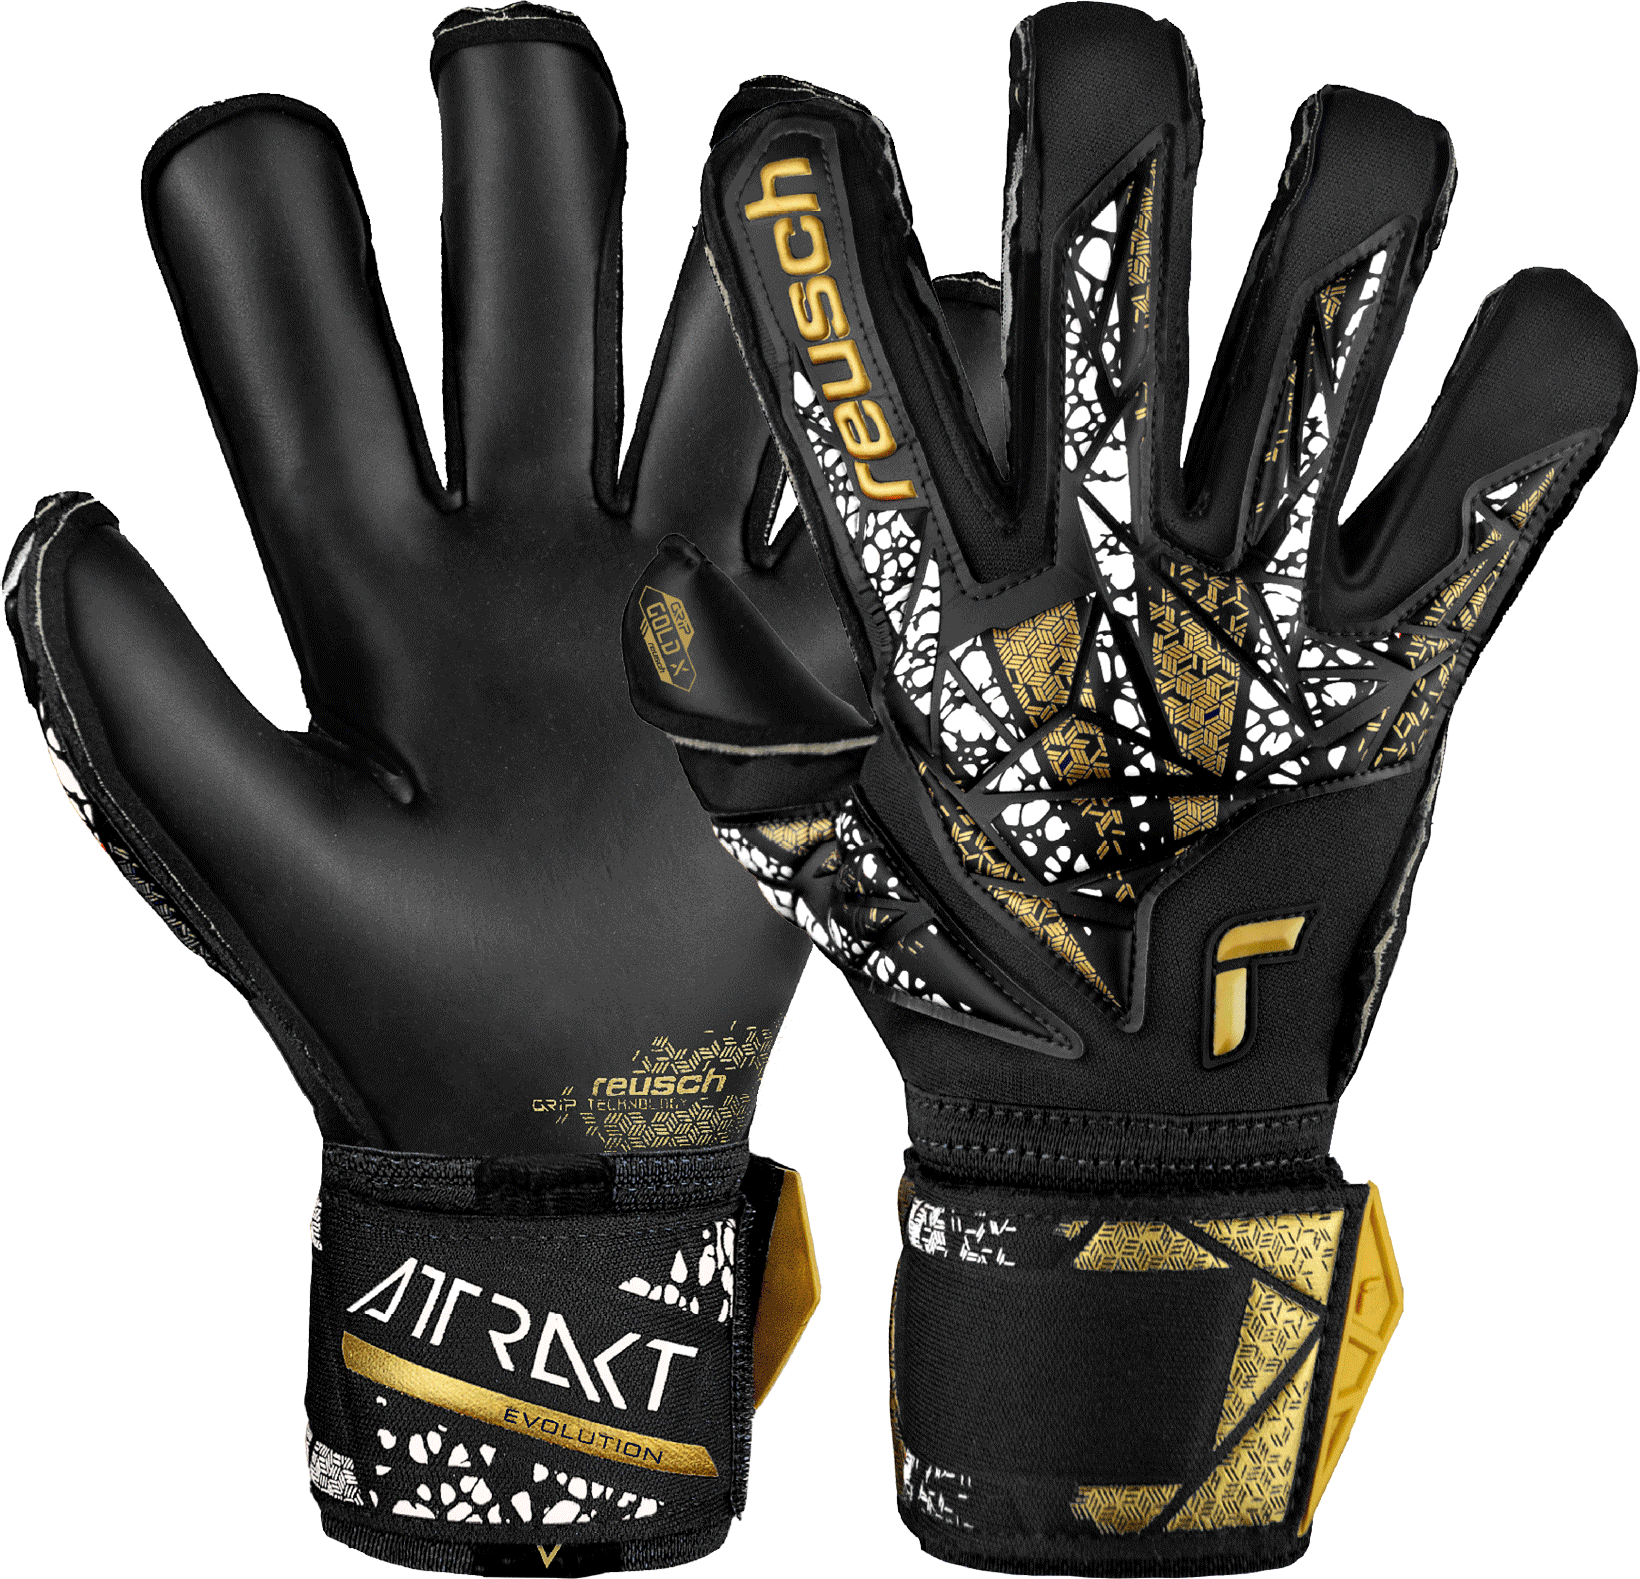 Goalkeeper's Reusch Attrakt Gold X Evolution Cut Finger Support Goalkeeper Gloves